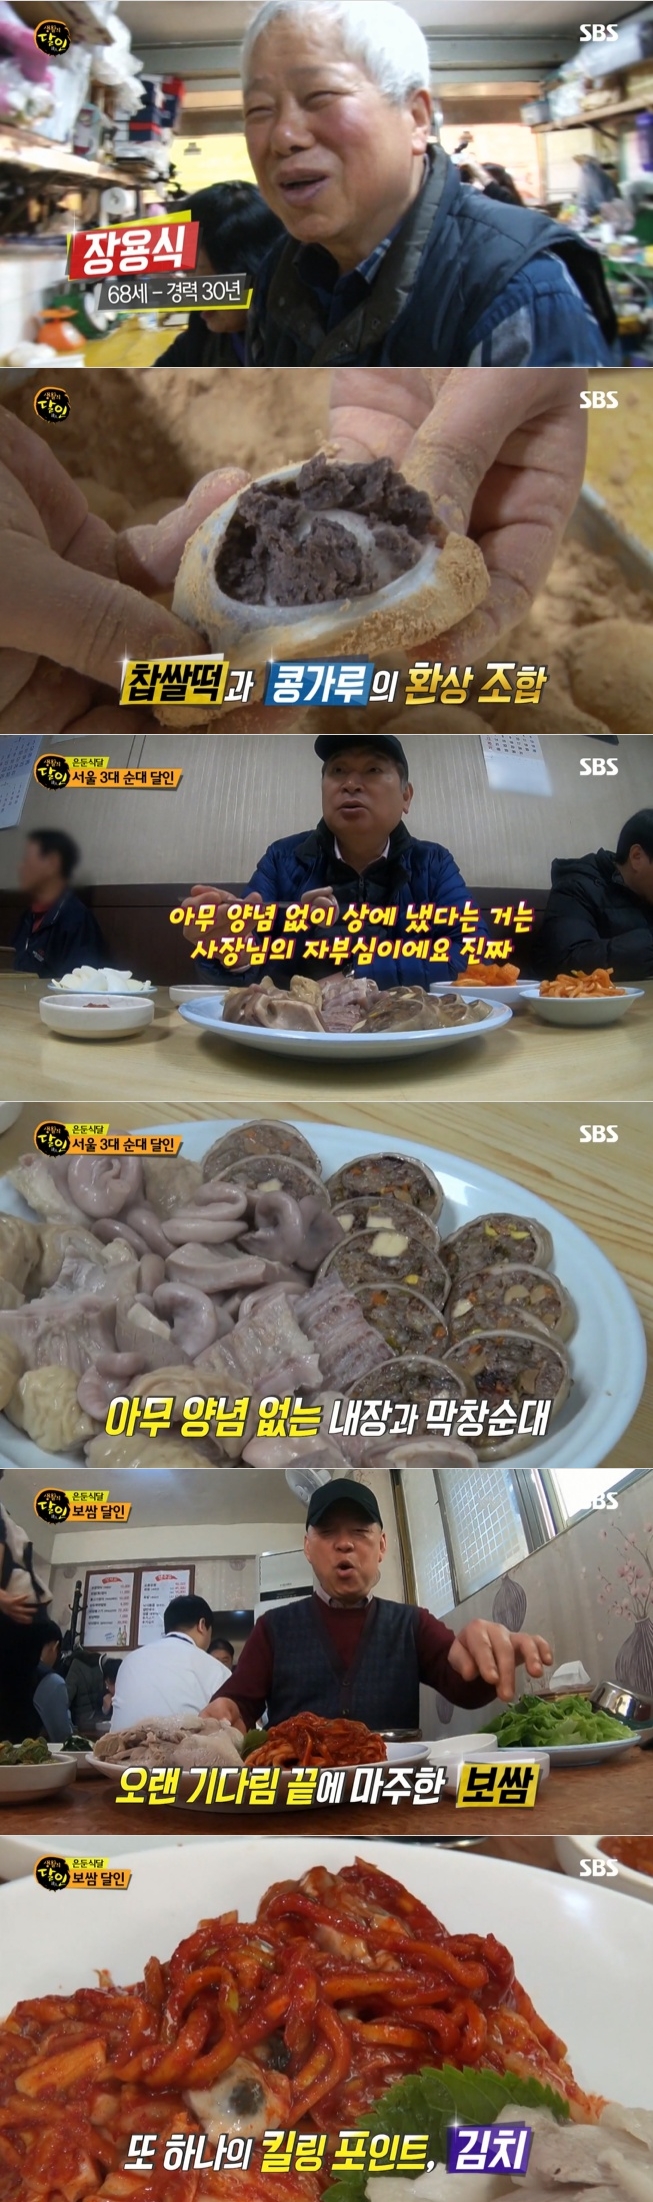 지난 21일 방송된 SBS '생활의 달인' 654회에서는 인천 콩찹쌀떡과 은둔식달로 보쌈과 순대를 소개했다. 사진=SBS 방송 캡처